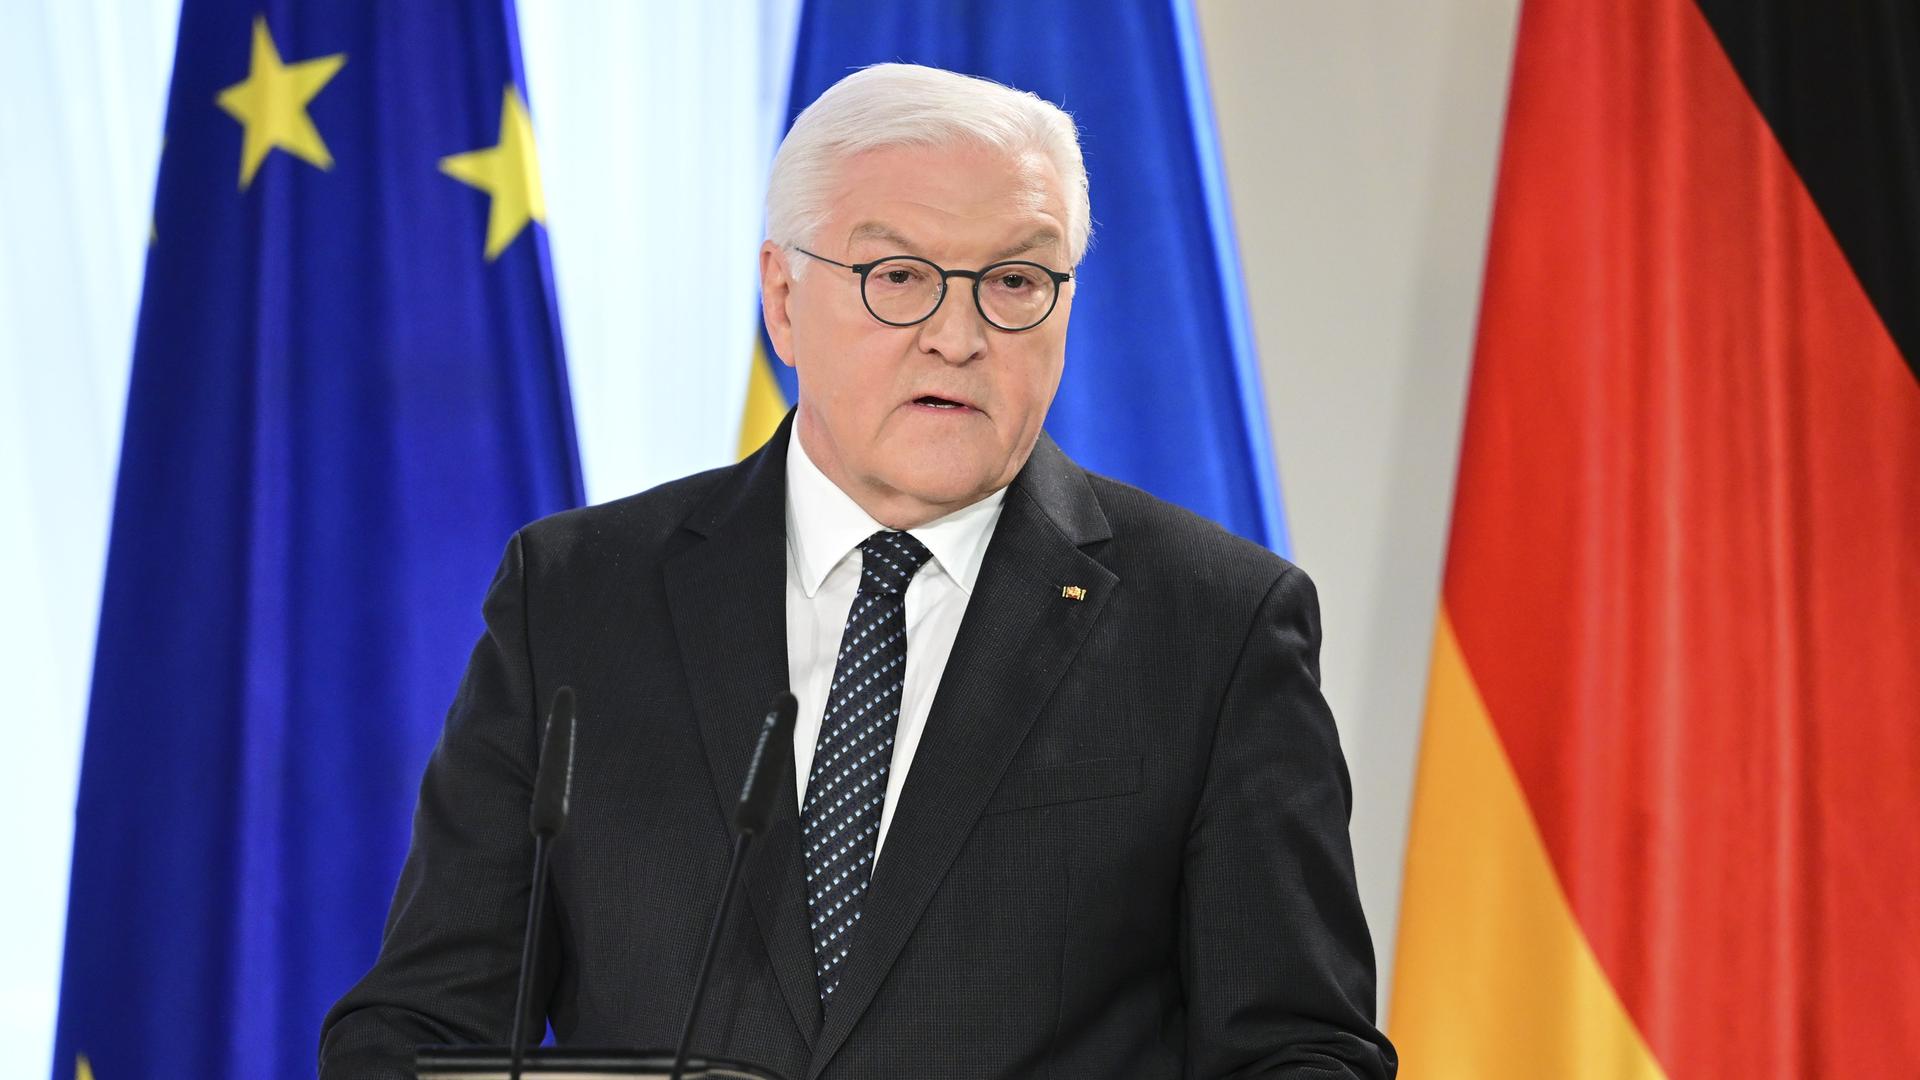 Frank-Walter Steinmeier am Rednerpult vor einer EU-, einer ukrainischen und einer deutschen Flagge.